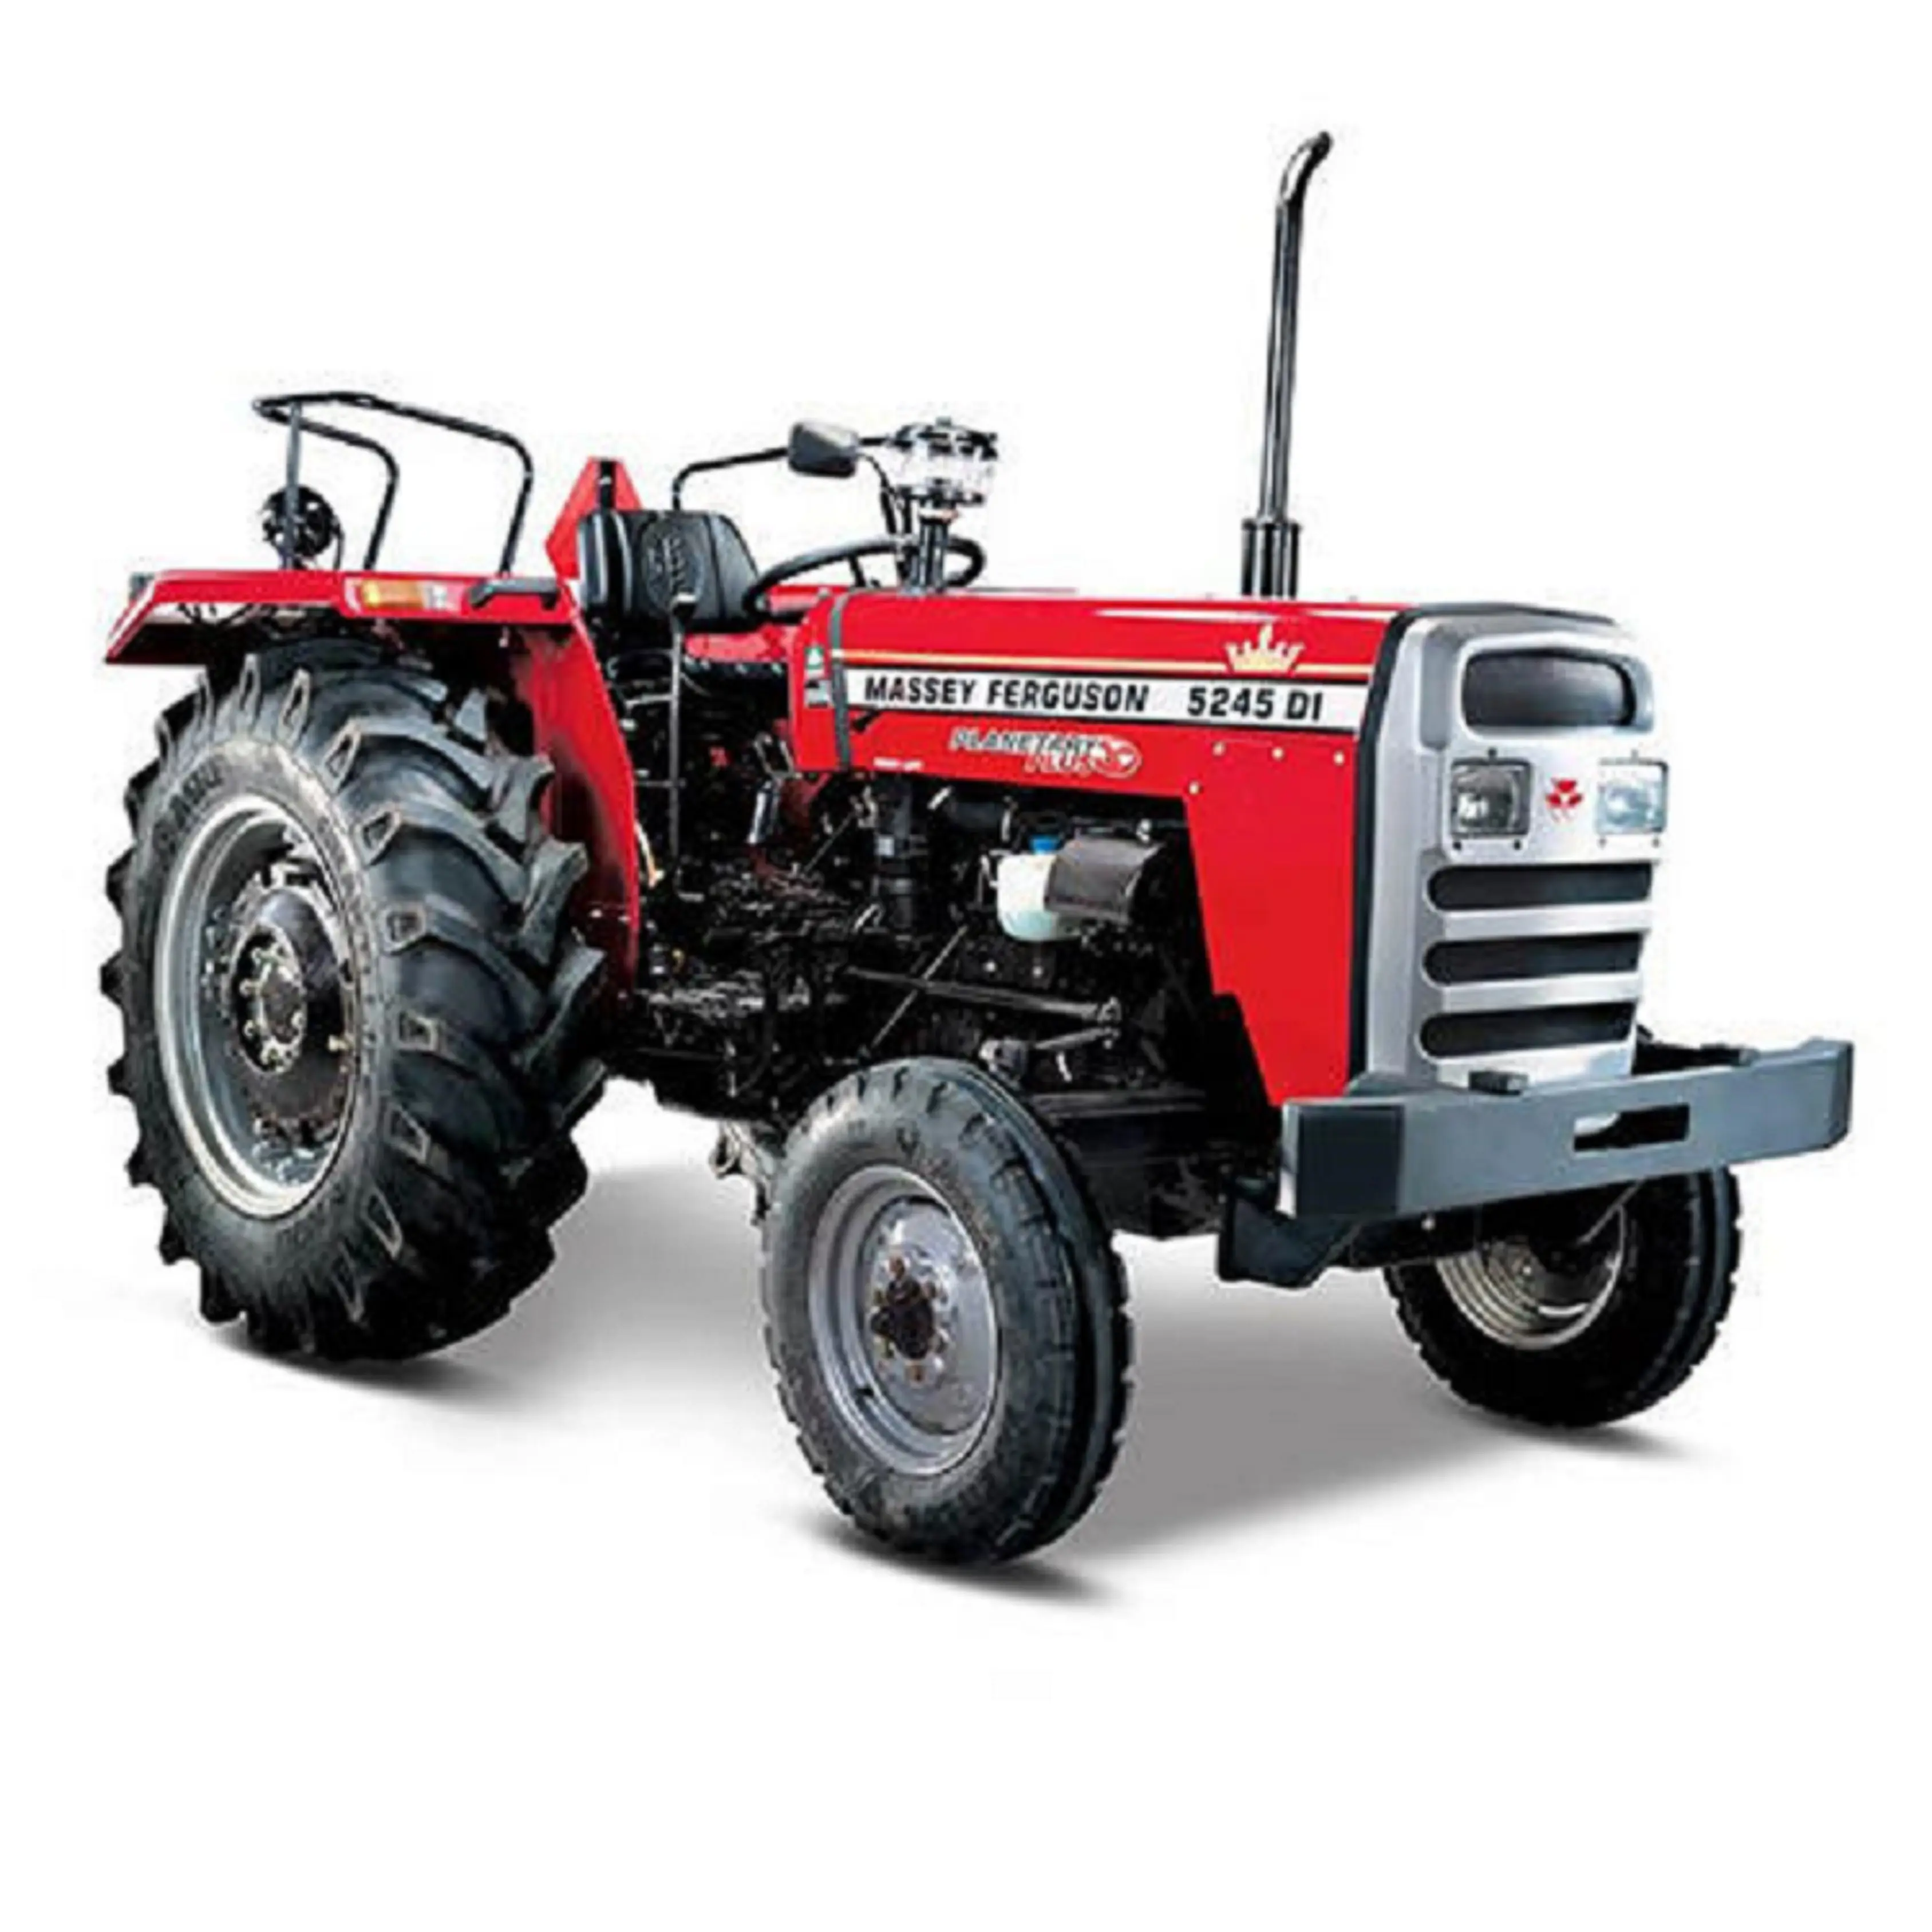 Massey Ferguson 290 Traktor Pertanian/Traktor Pertanian Bekas Siap untuk Ekspor/Model Traktor MF290 Tersedia